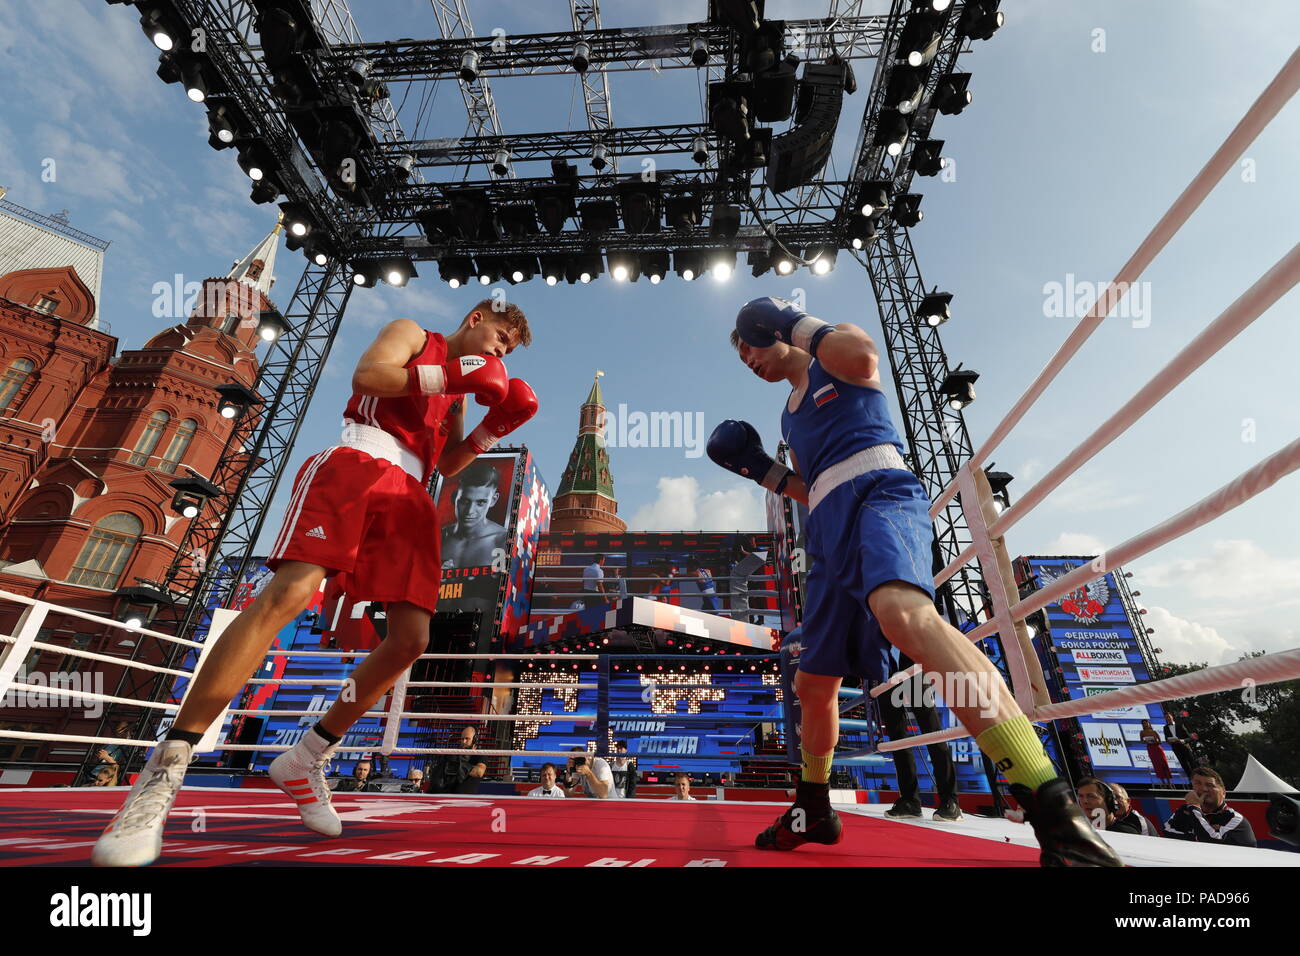 Moscou, Russie. 22 juillet, 2018. Moscou, Russie - le 22 juillet 2018 : Un  match de boxe à Carré Manezhnaya durant la célébration de la Journée de la  fédération de boxe. Mikhail